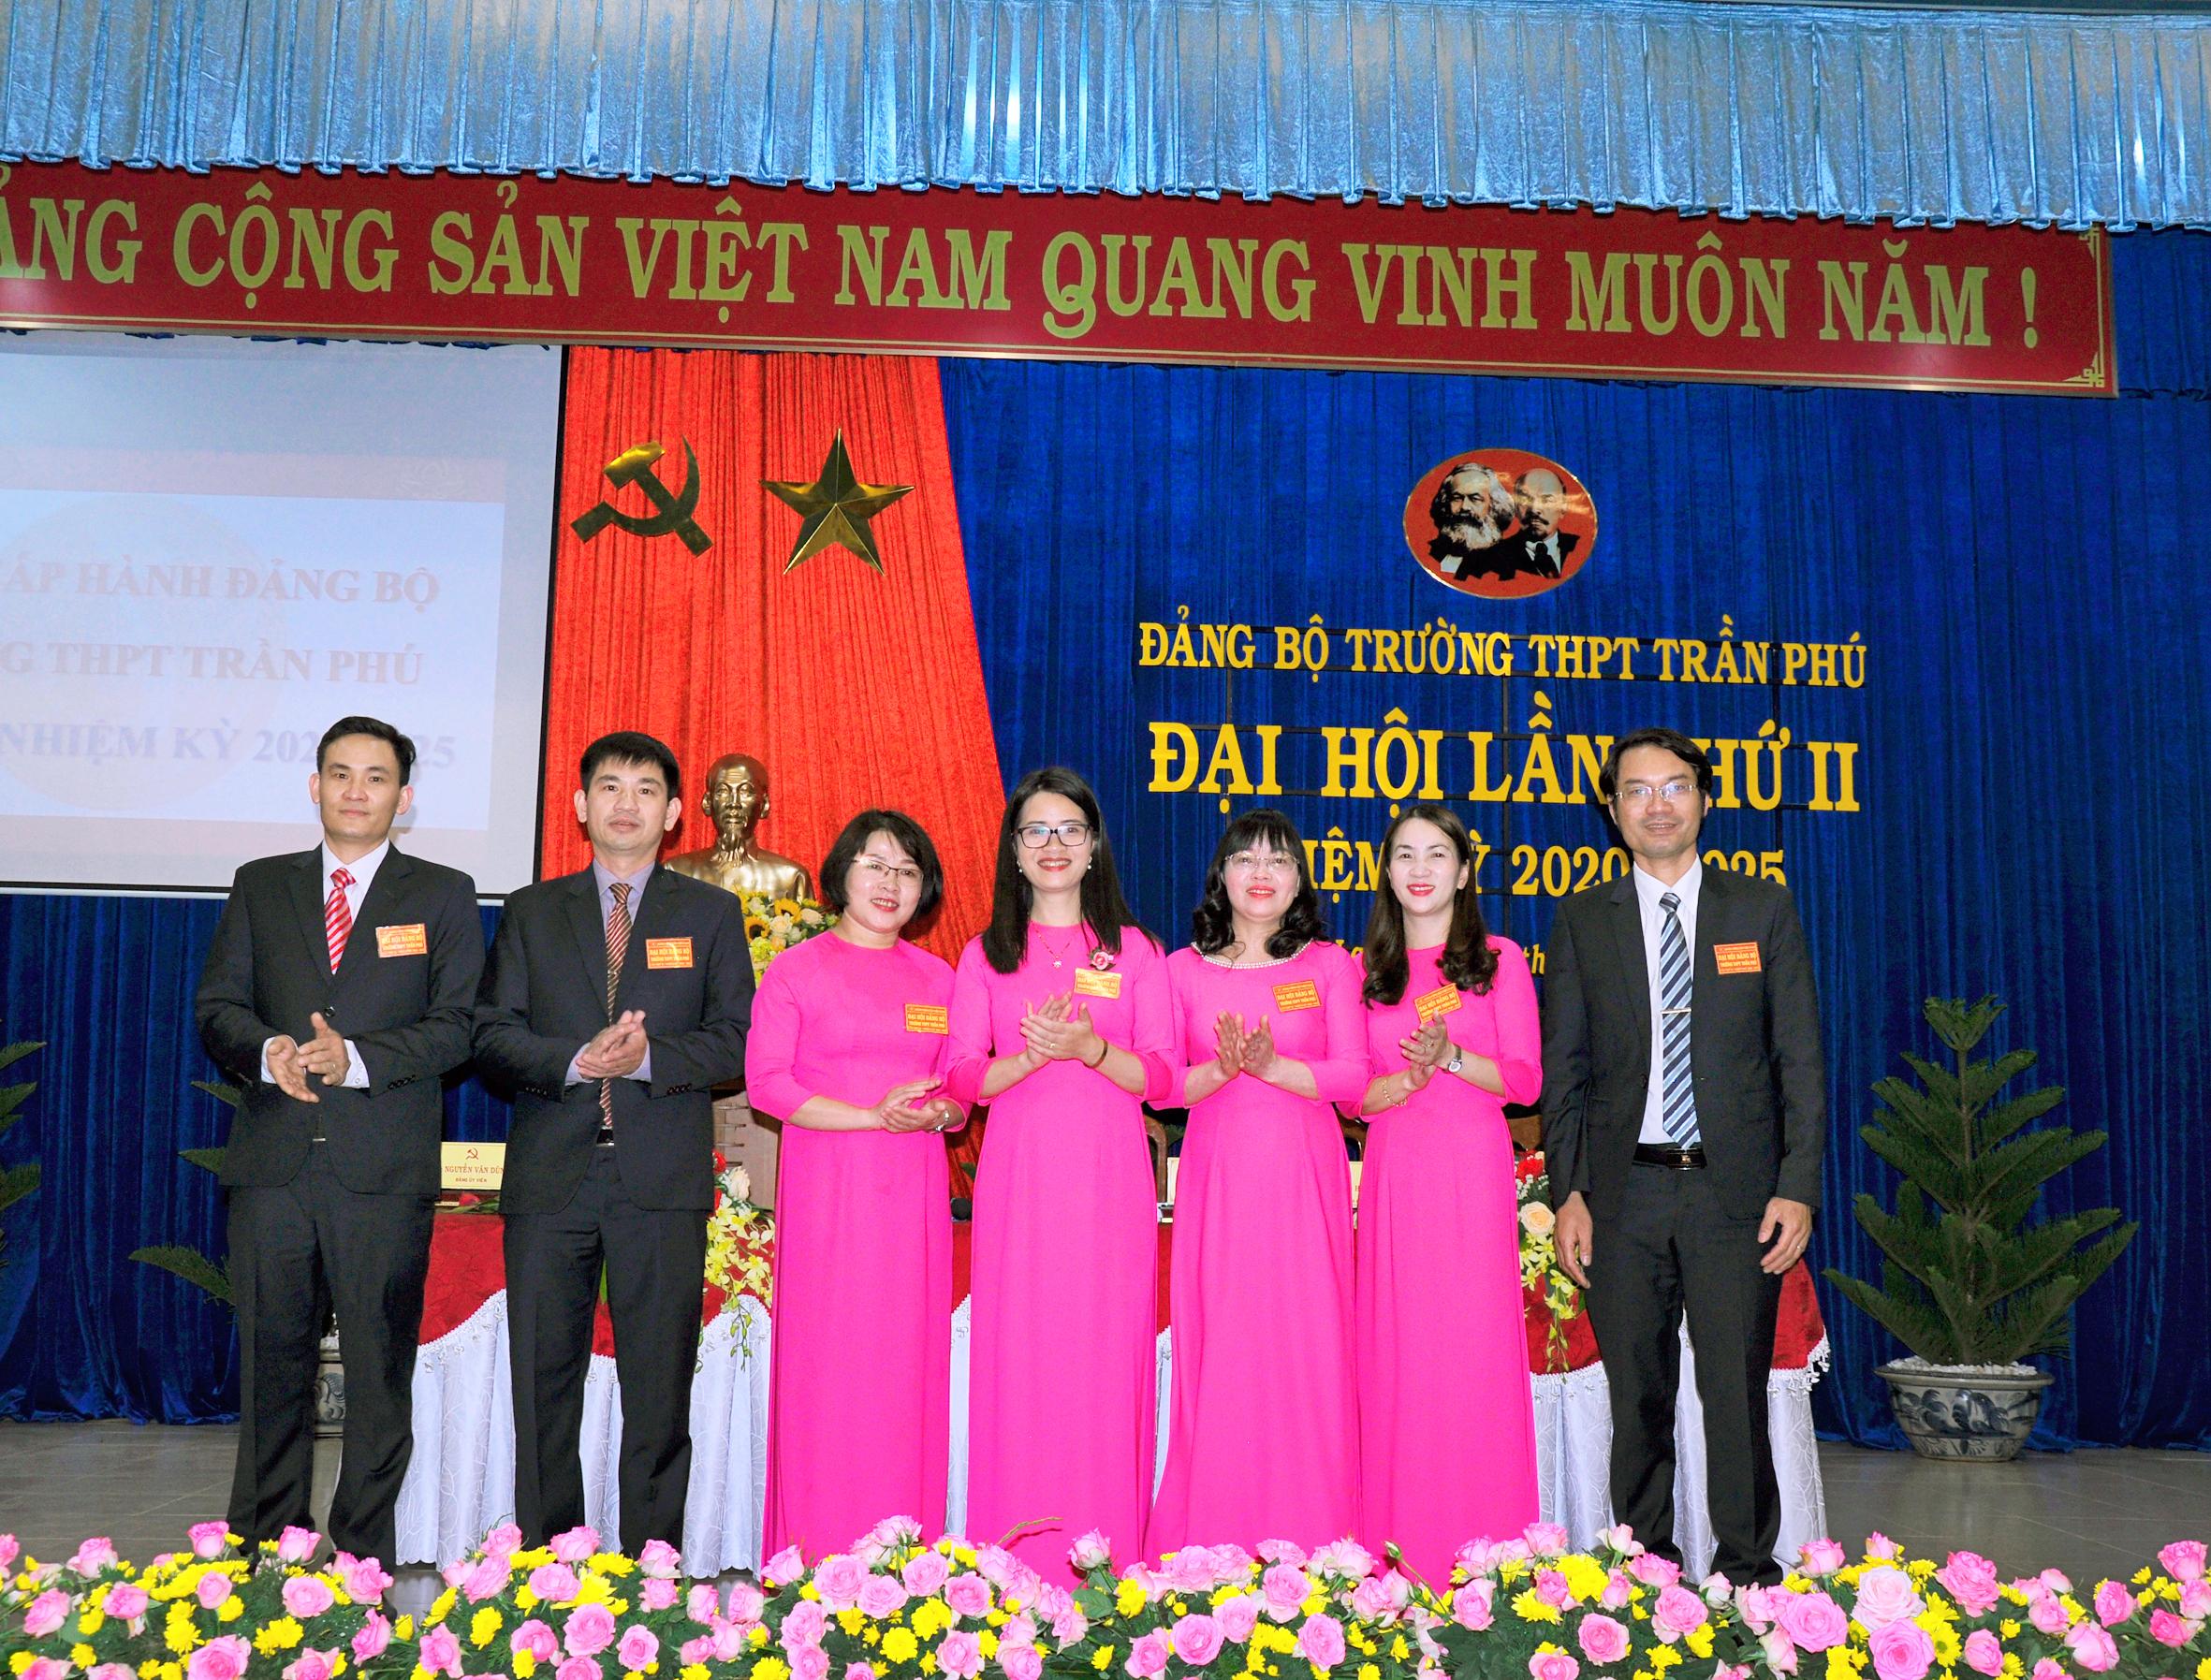 Đại hội Đảng bộ trường THPT Trần Phú, khóa II, nhiệm kỳ 2020 - 2025